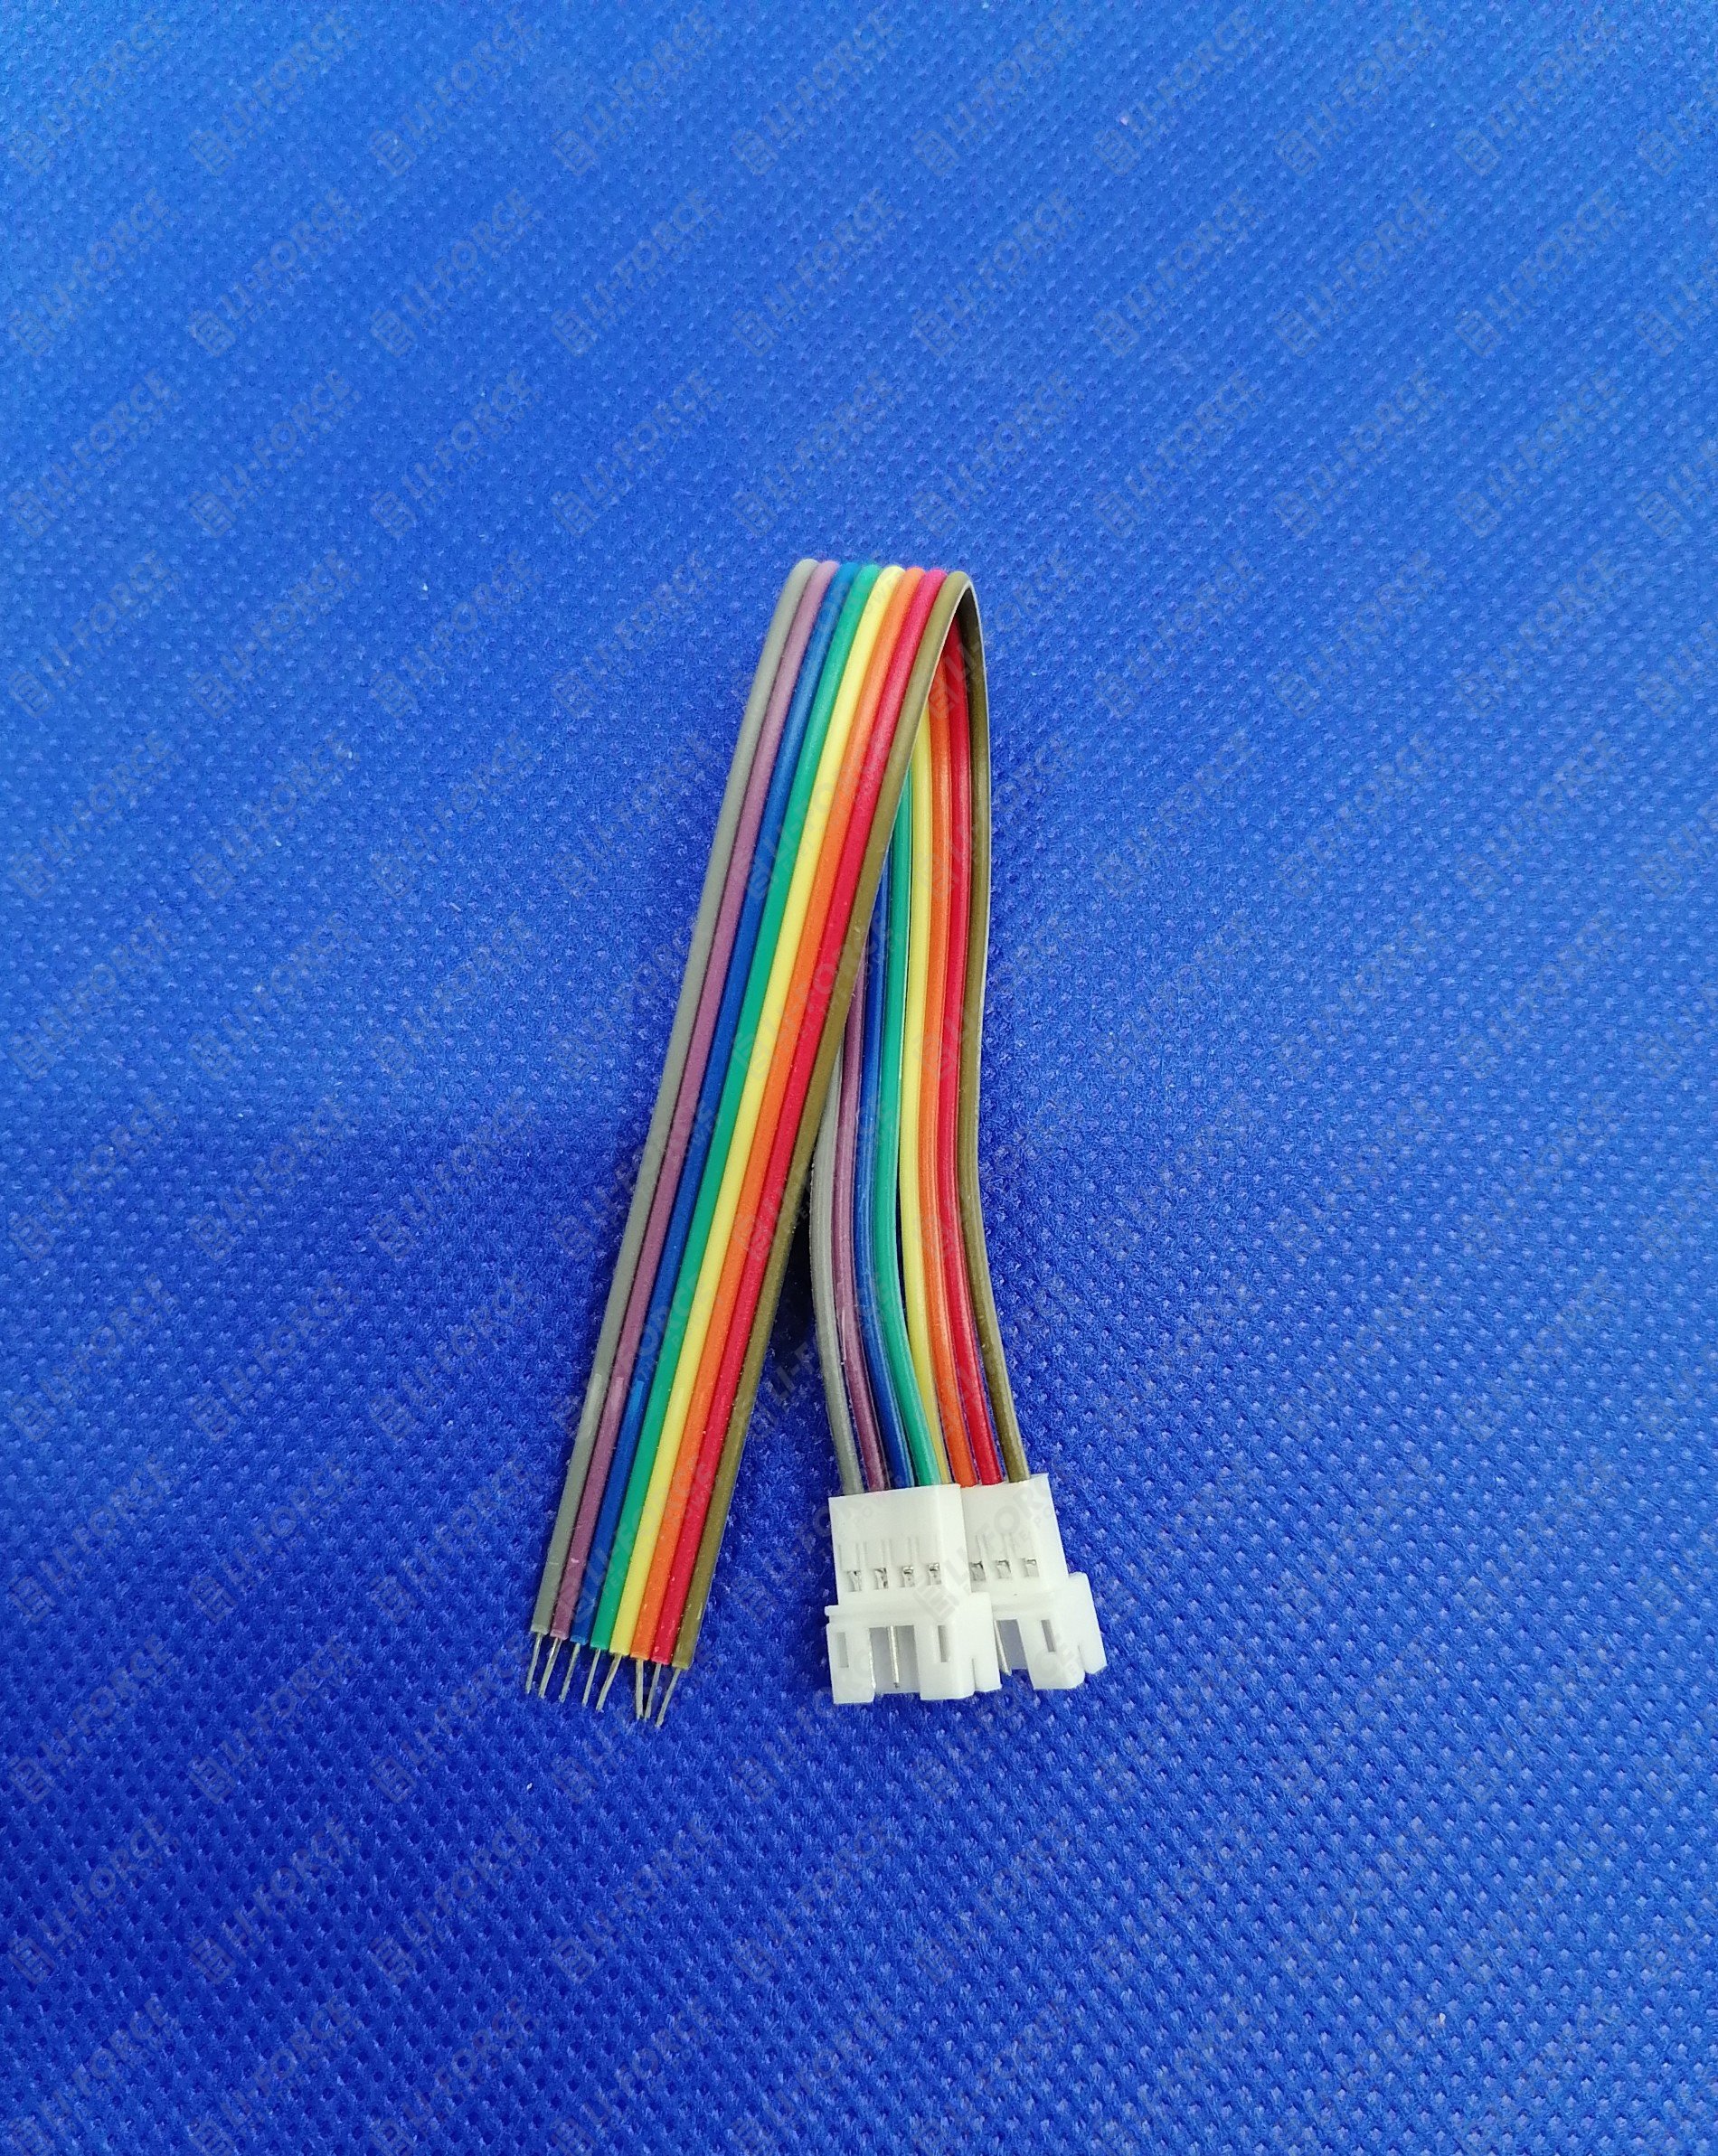 Провод 150 24. Разъем ph11. Разъем PH-5fc. Разноцветные провода для колонки. Безыскровой разъем.